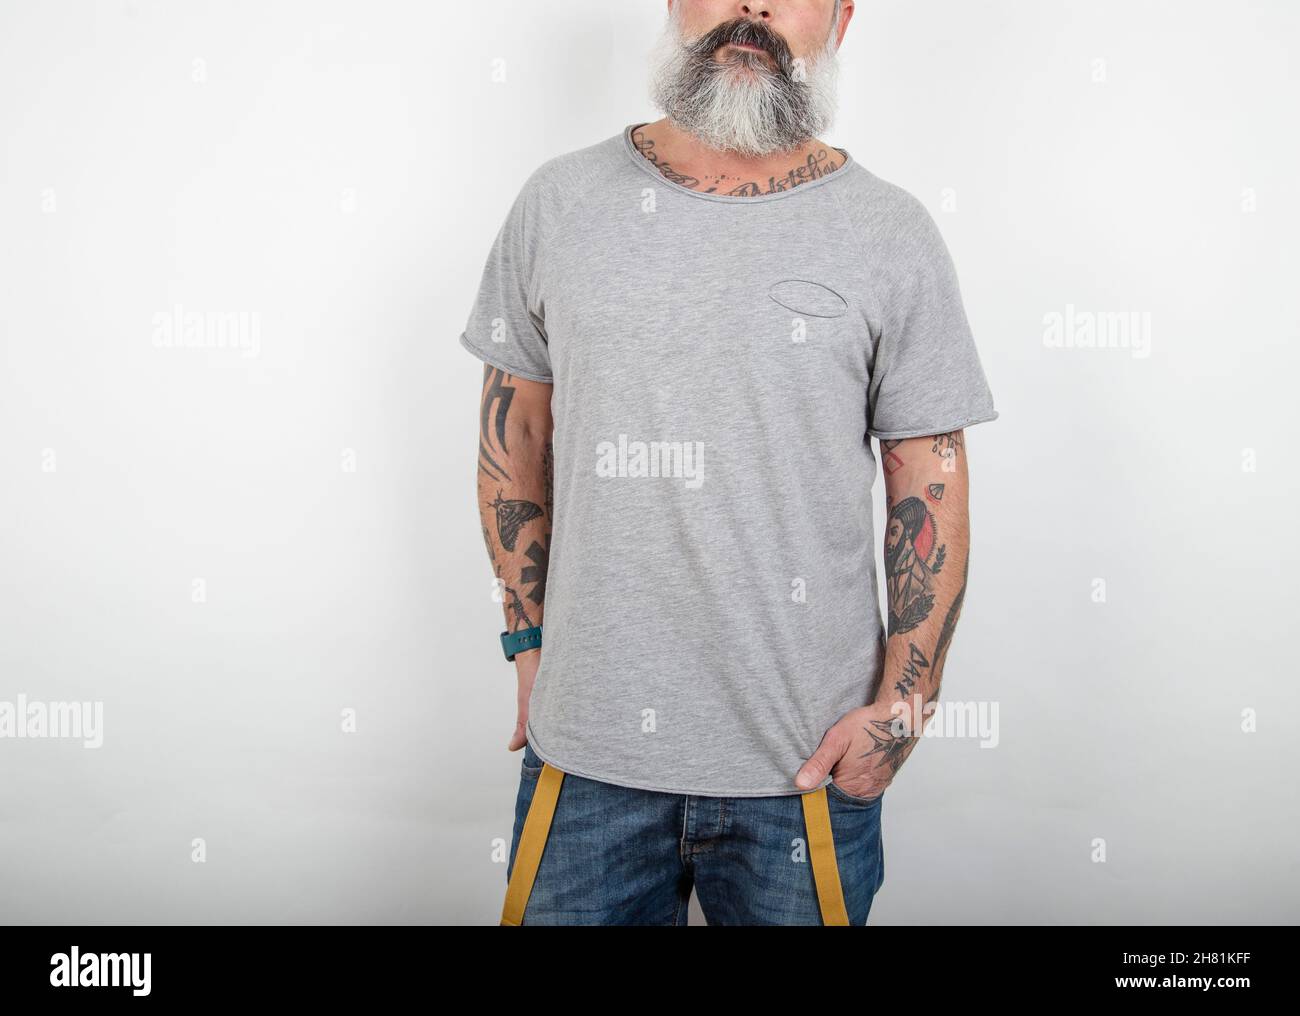 Gros plan d'un homme tatoué à barbe pose dans un Jean avec bretelles et un t-shirt en coton gris sur fond blanc. Banque D'Images